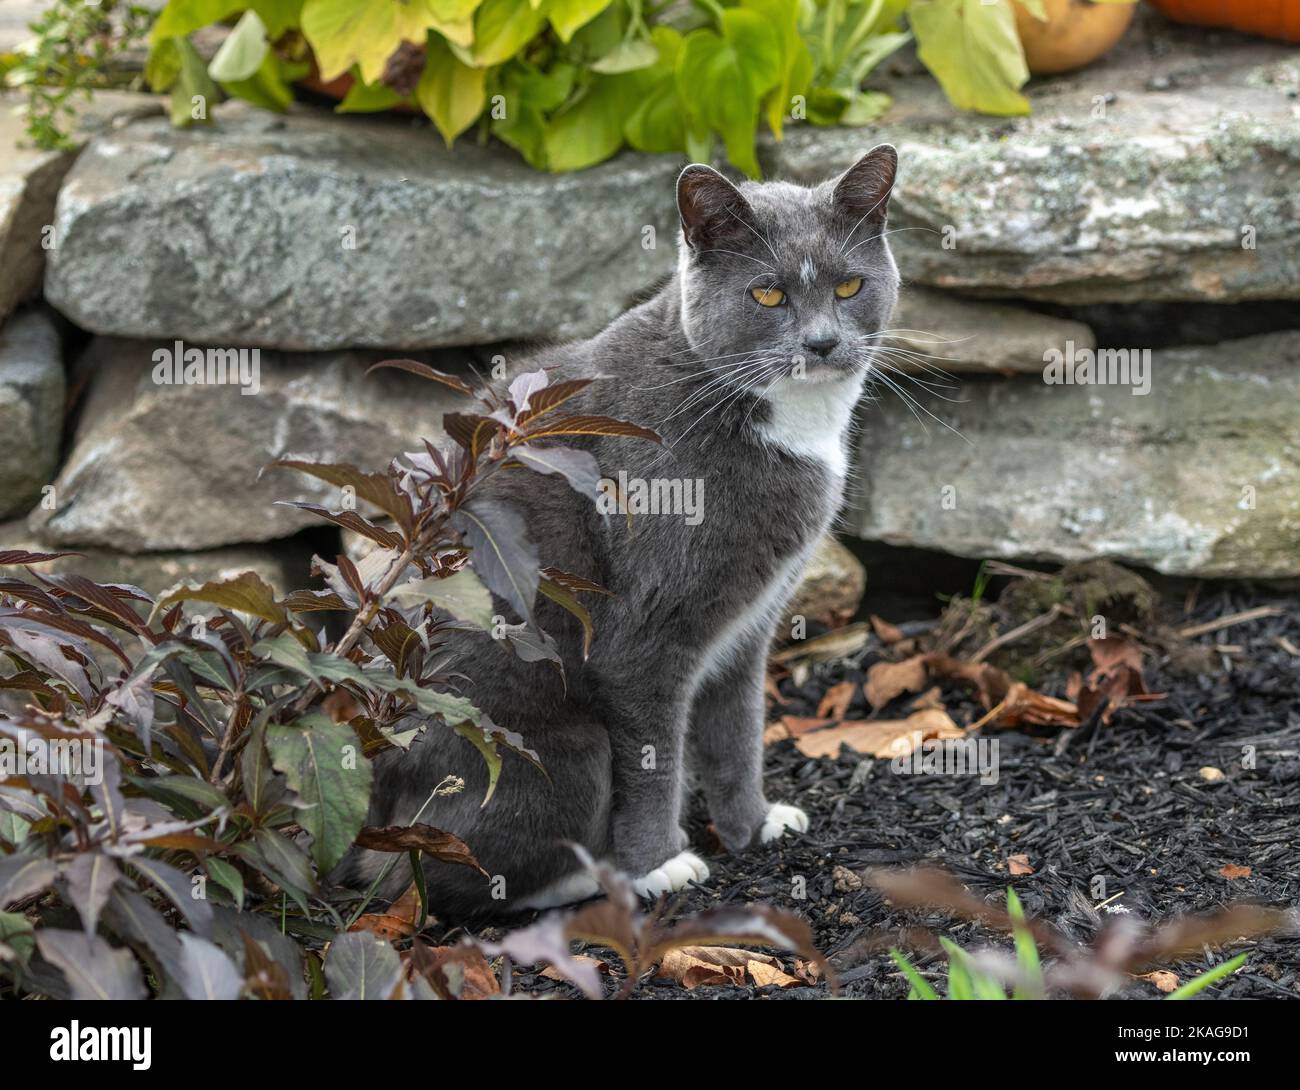 Gato de esmoquin gris ahumado sentado en un saliente de piedra Foto de stock